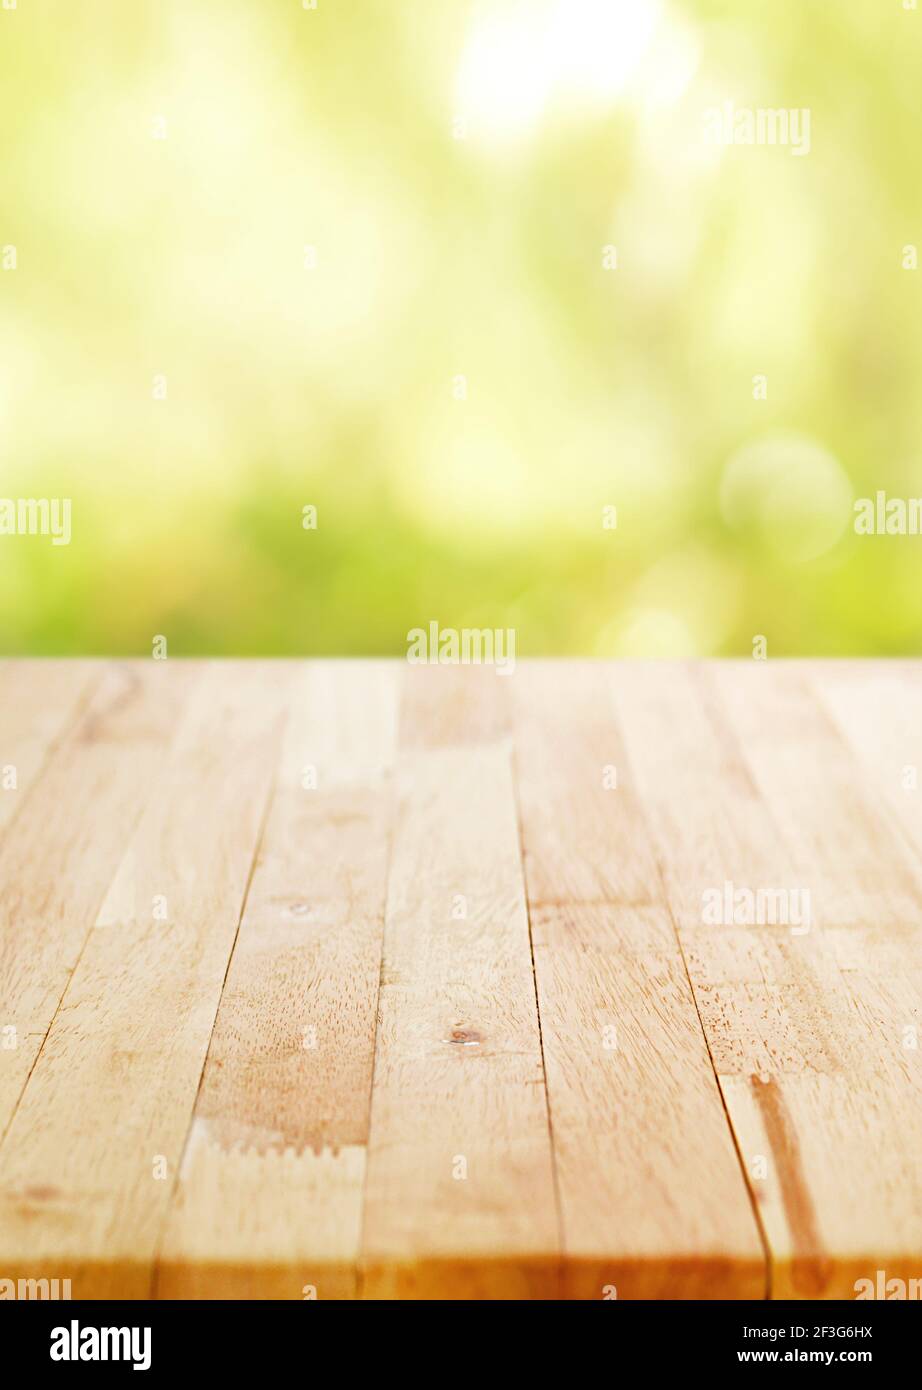 Holztischplatte auf unscharfen grünen Bokeh Hintergrund, Poster Größe Verhältnis - kann für die Montage oder Anzeige Ihrer Produkte verwendet werden Stockfoto